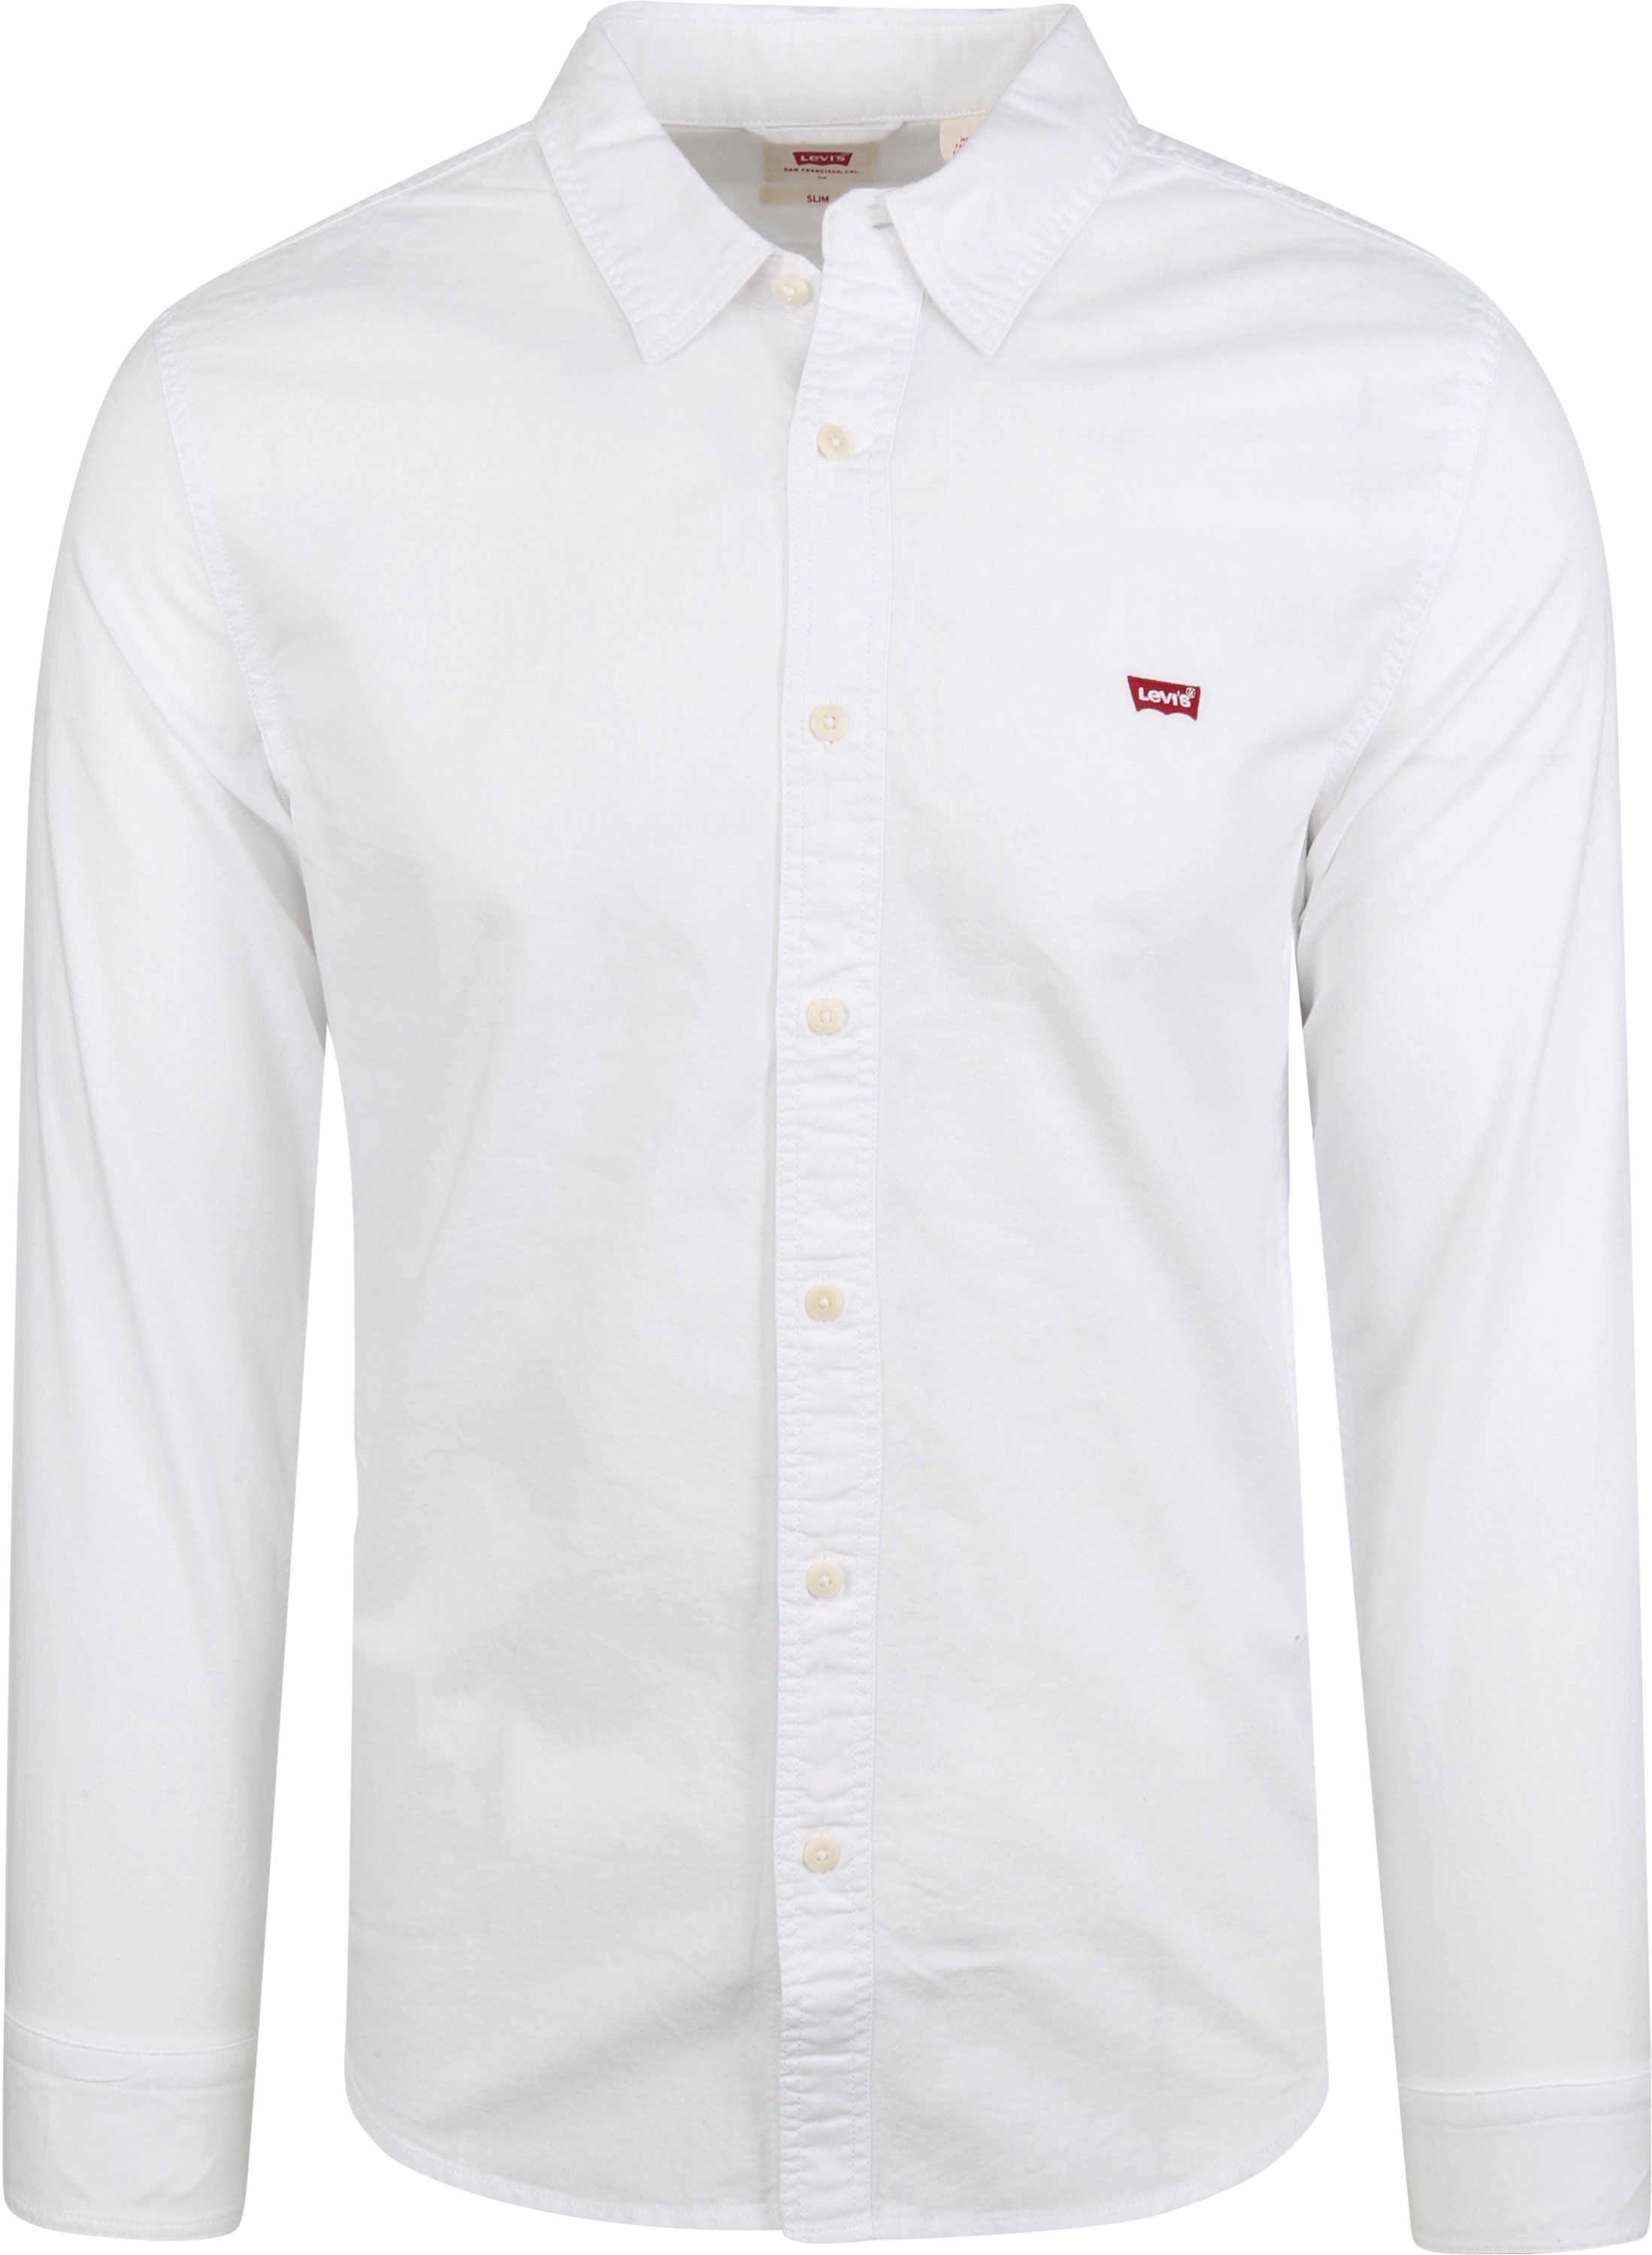 Levis - Levi's battery shirt white size l